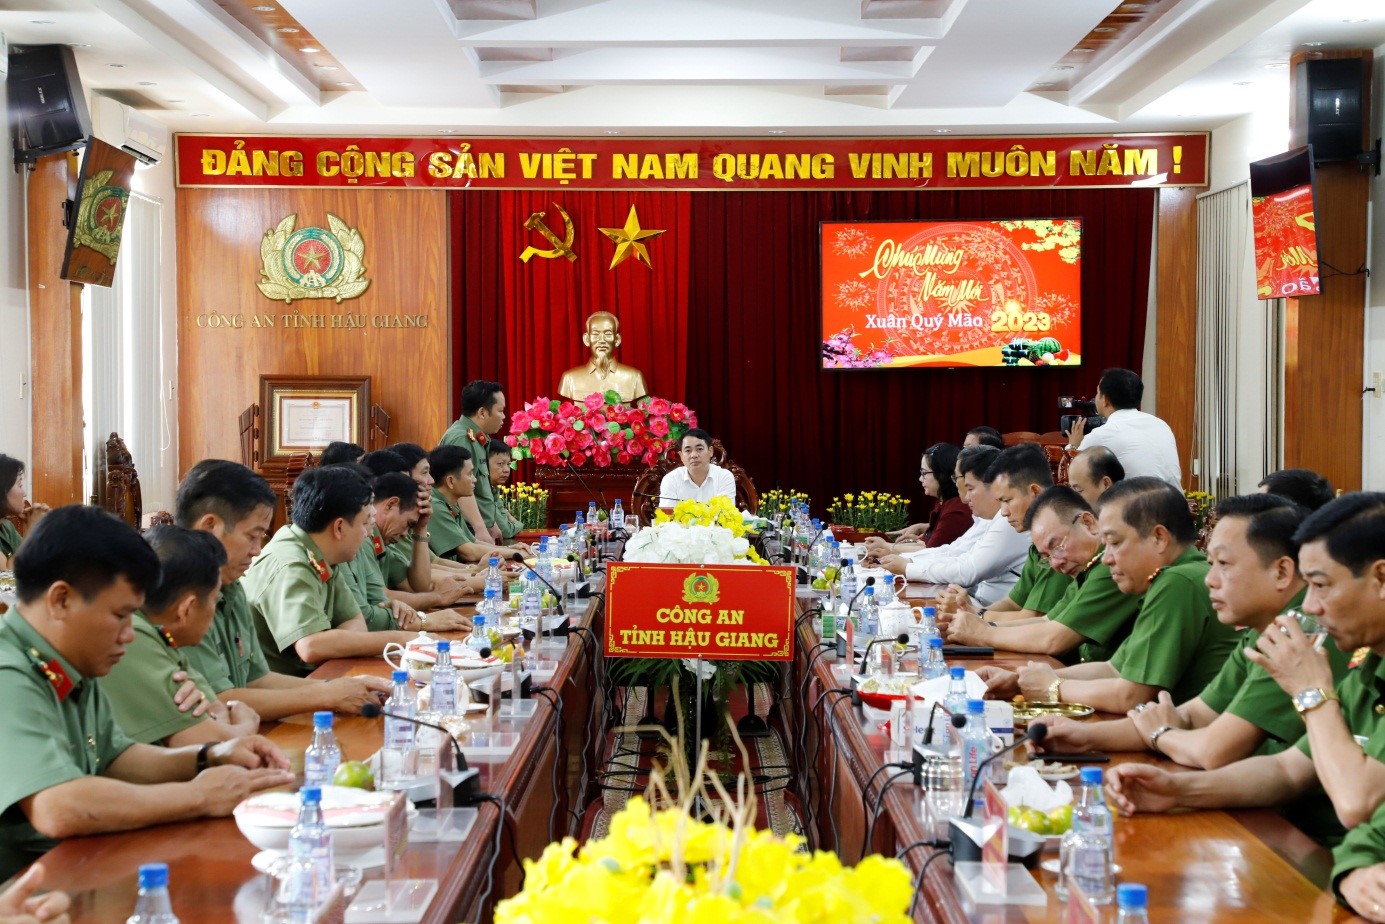 Đồng chí Đại tá Nguyễn Văn Thắng, Phó Giám đốc Công an tỉnh báo cáo một số tình hình, kết quả nổi bật của lực lượng Công an tỉnh năm 2022